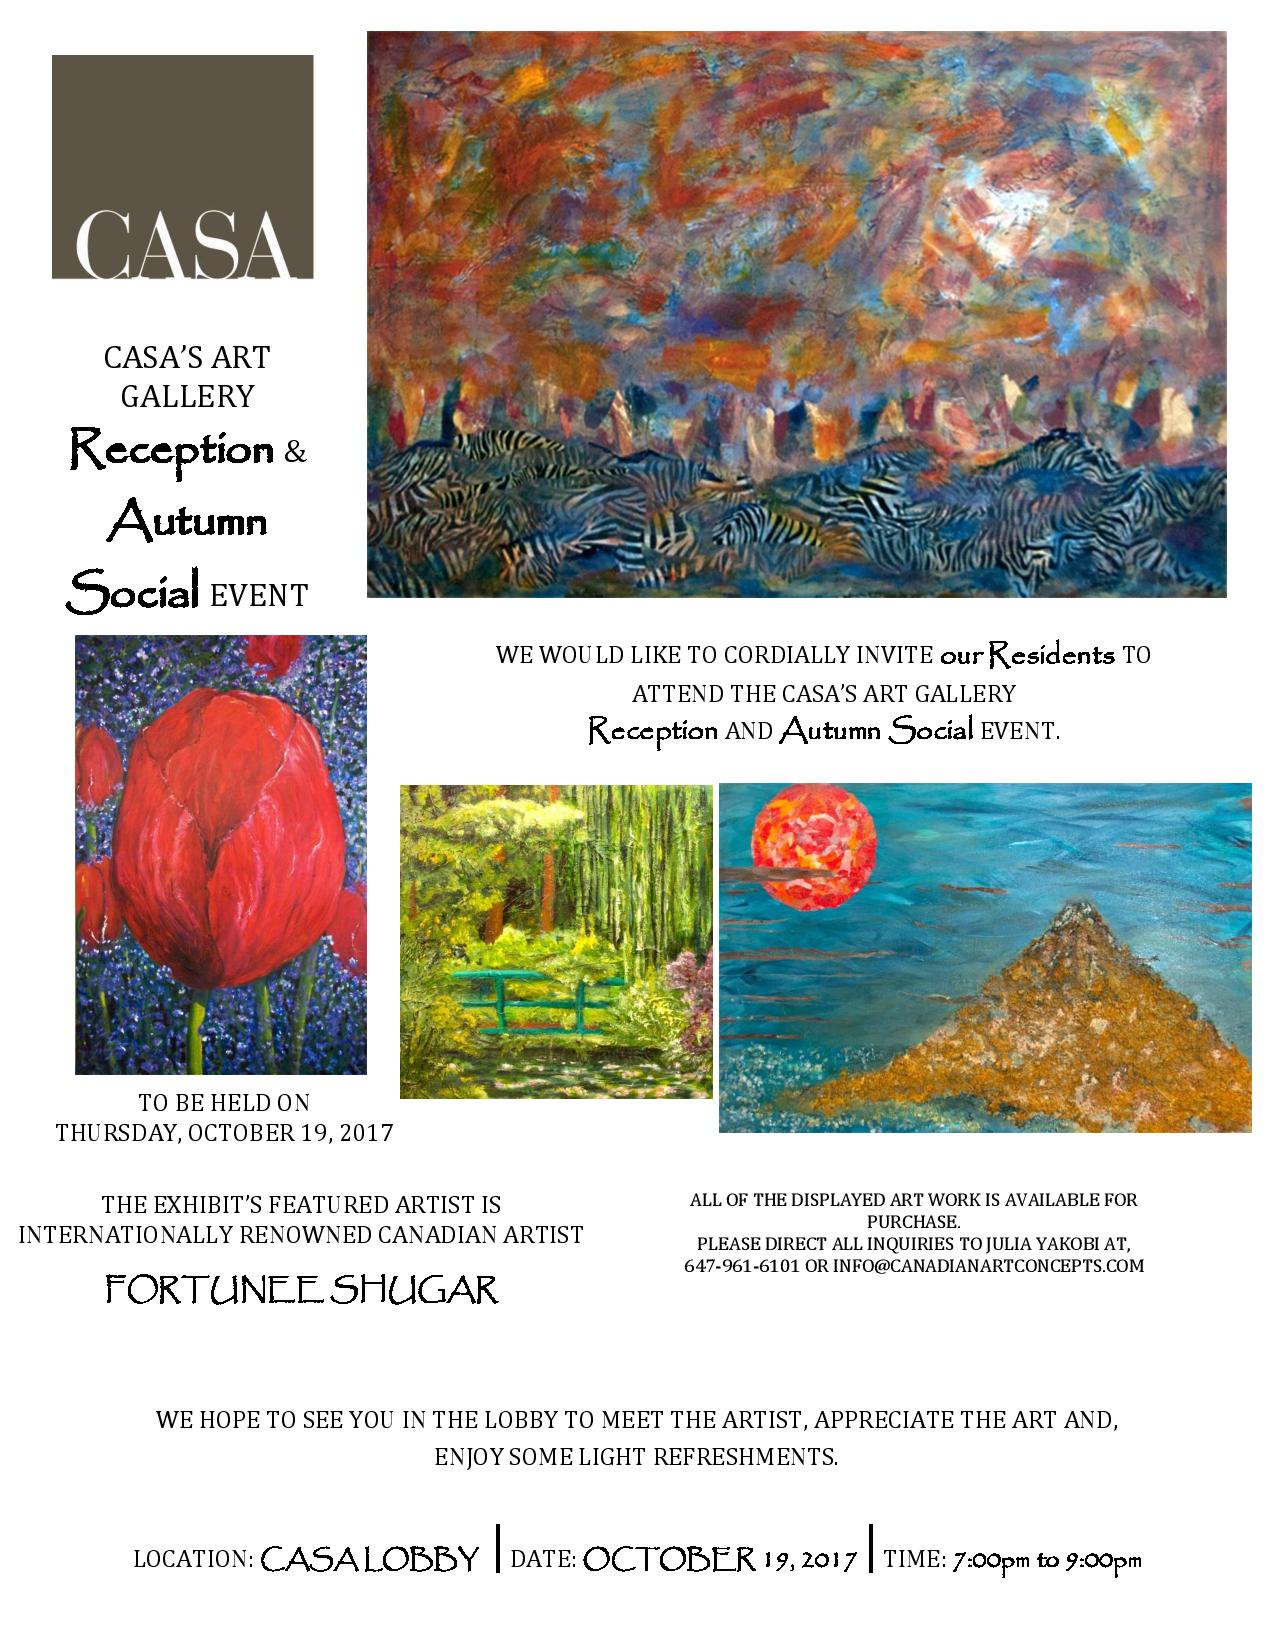 TSCC 2058 CASA s Art Exhibit Reception and Autumn Social Event - October 19, 2017 jpg